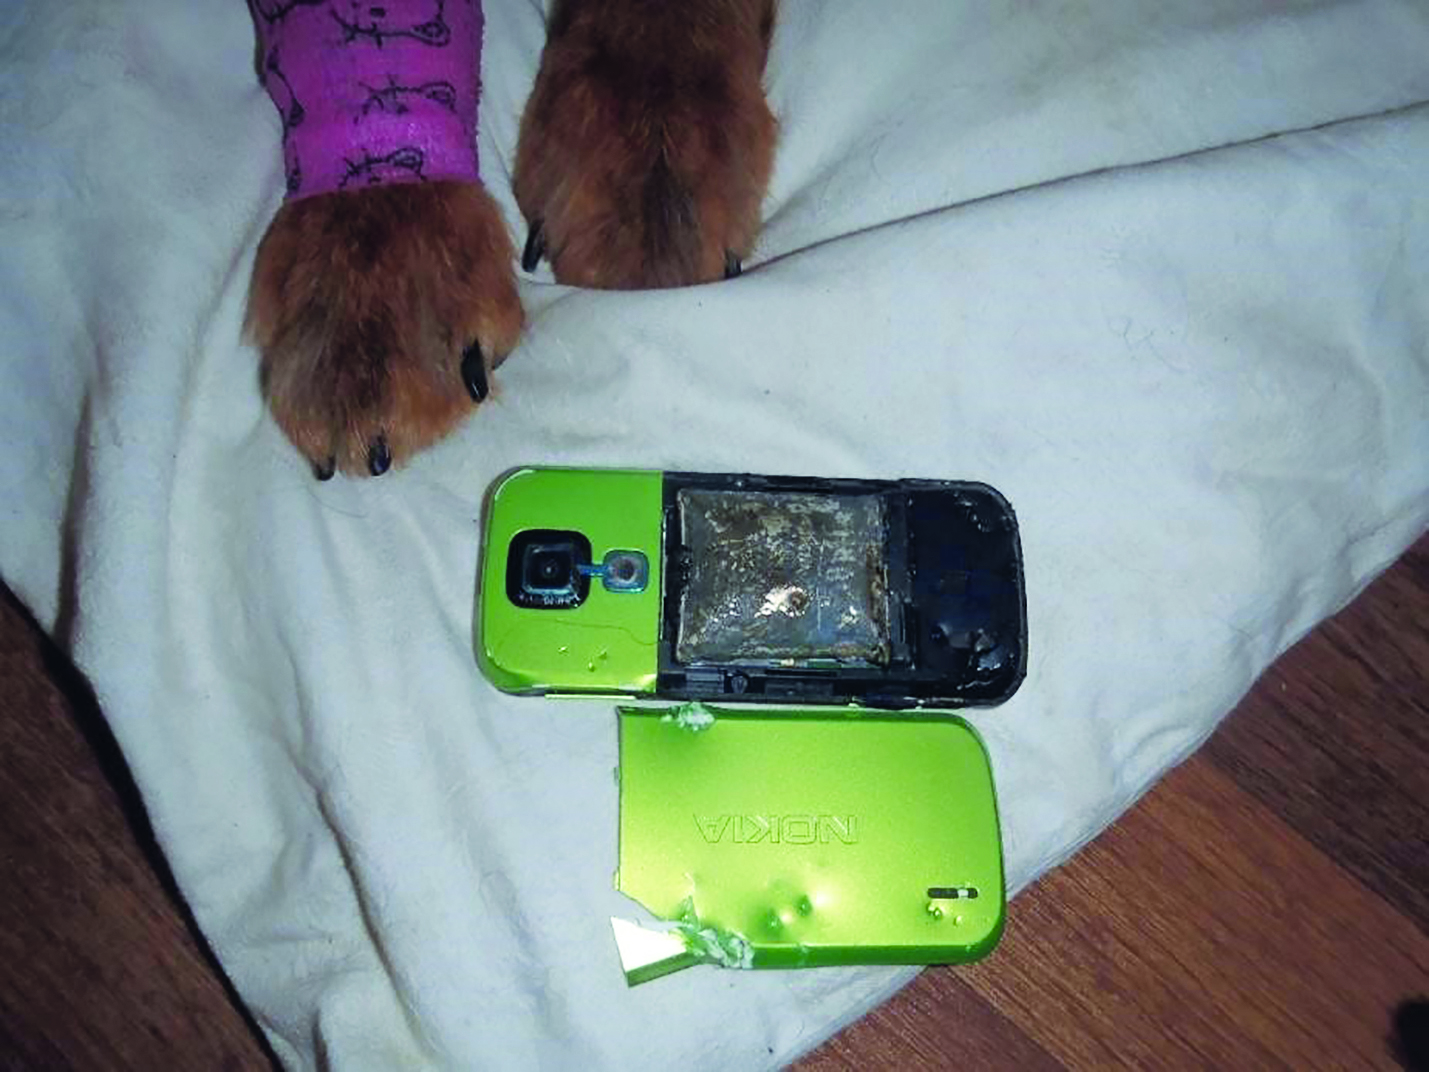 Obr. 3 Mechanické poškození mobilního telefonu - rozkousání psem [zdroj: HZS Libereckého kraje]